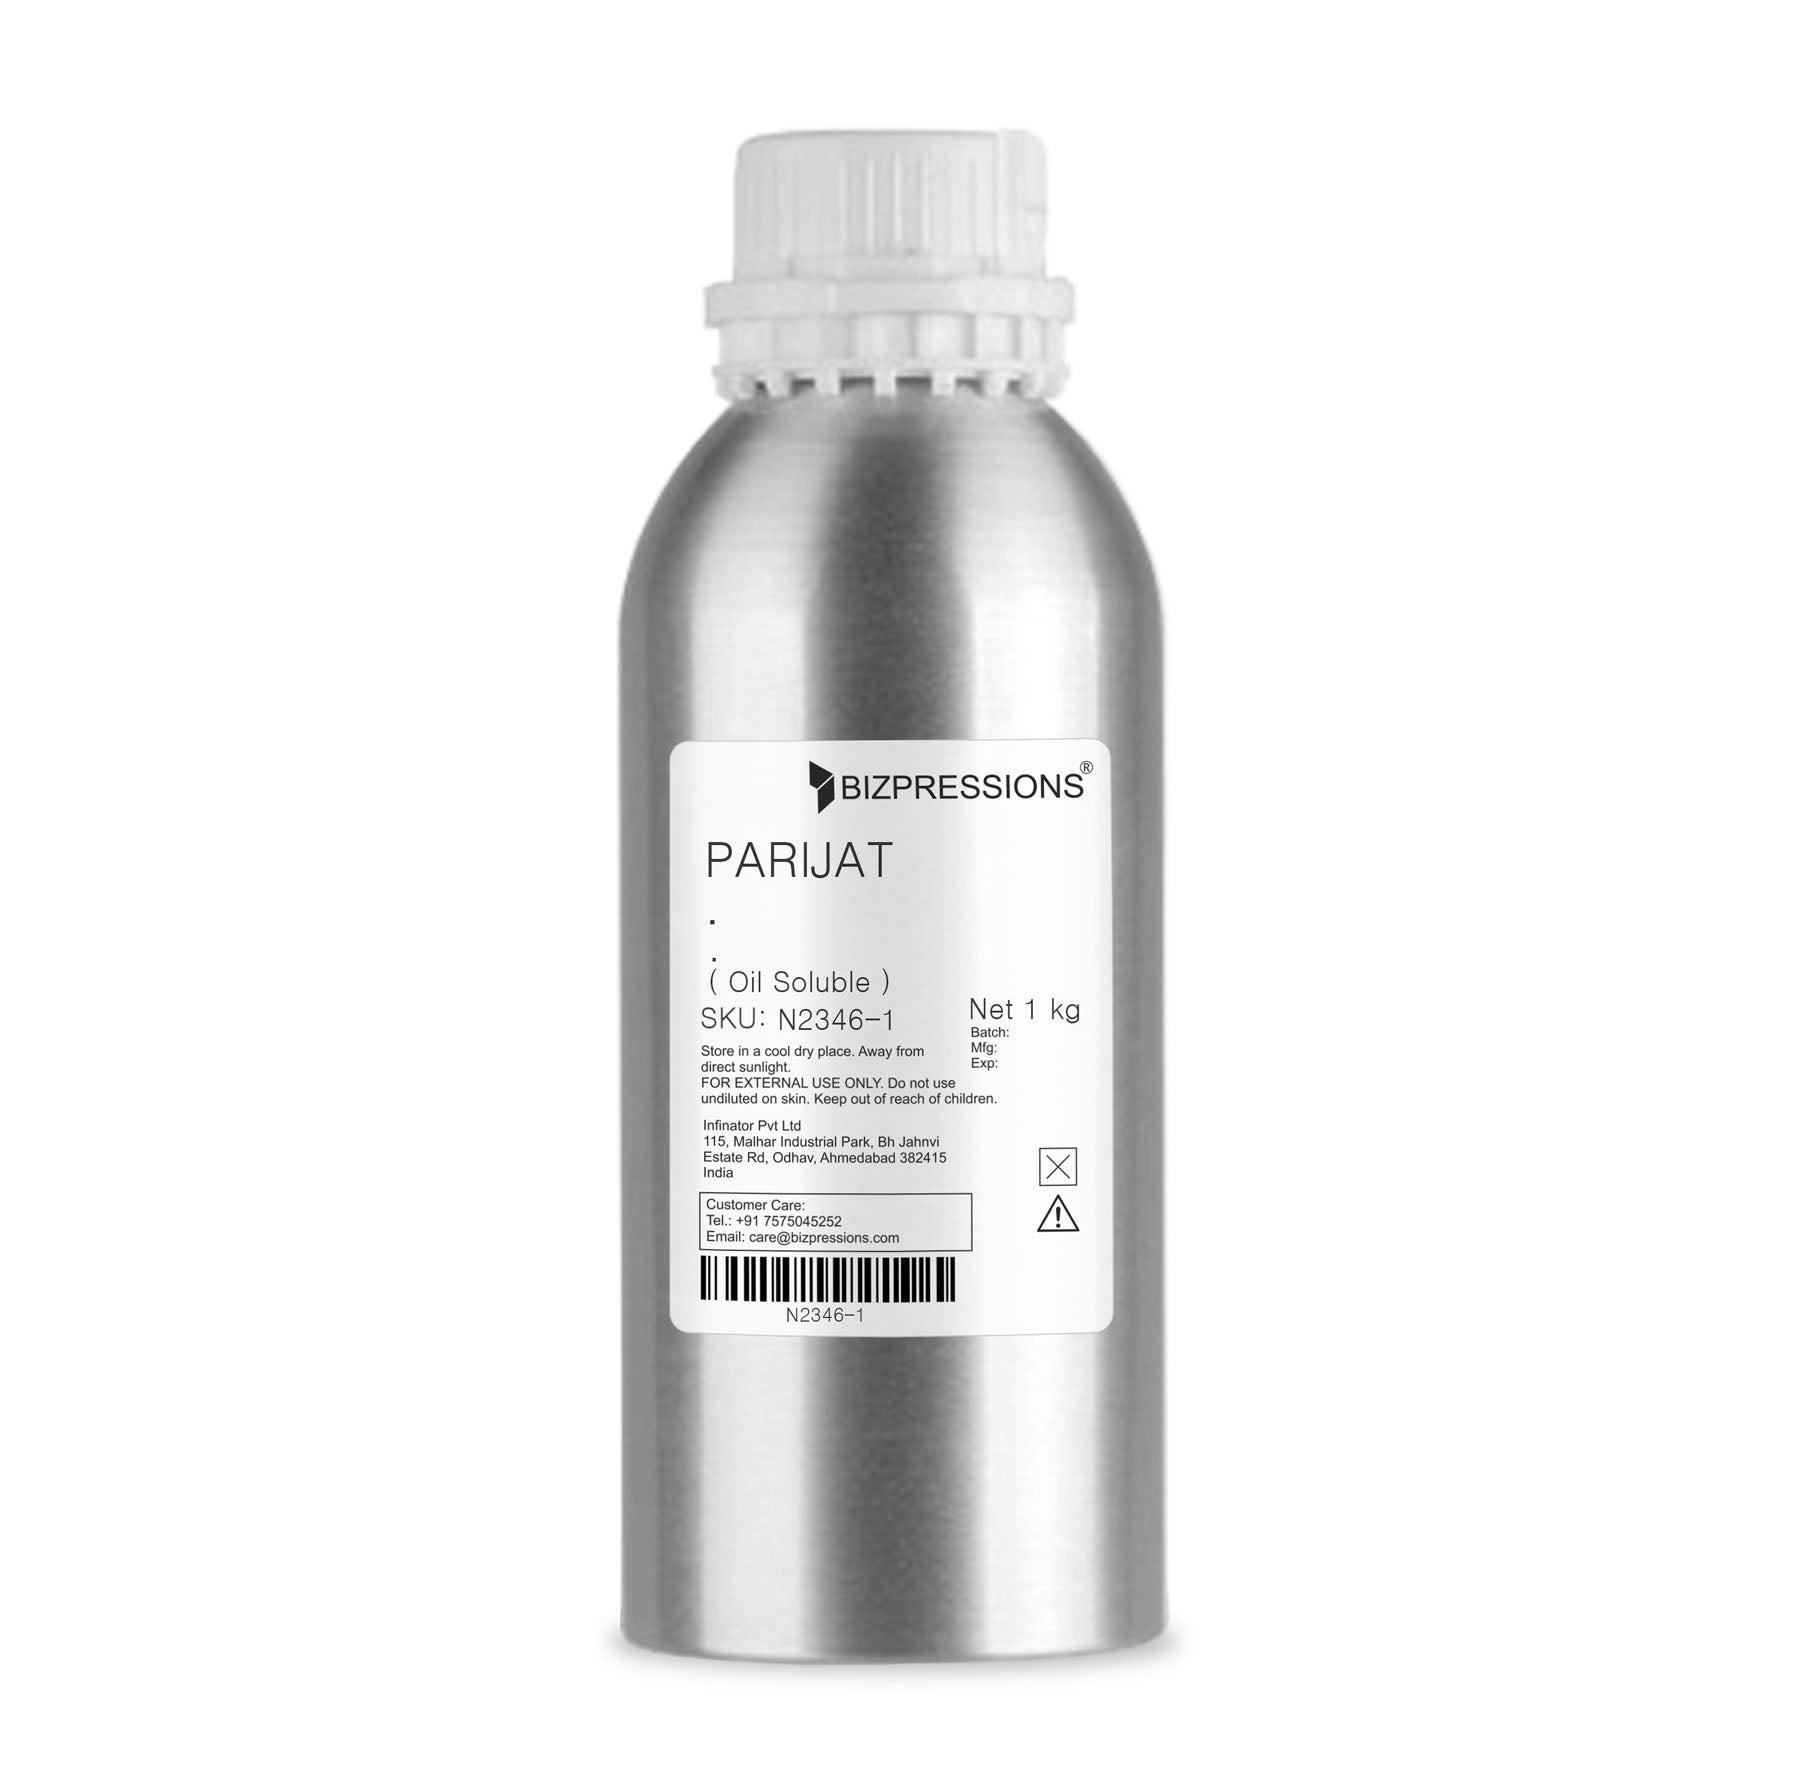 PARIJAT - Fragrance ( Oil Soluble ) - 1 kg